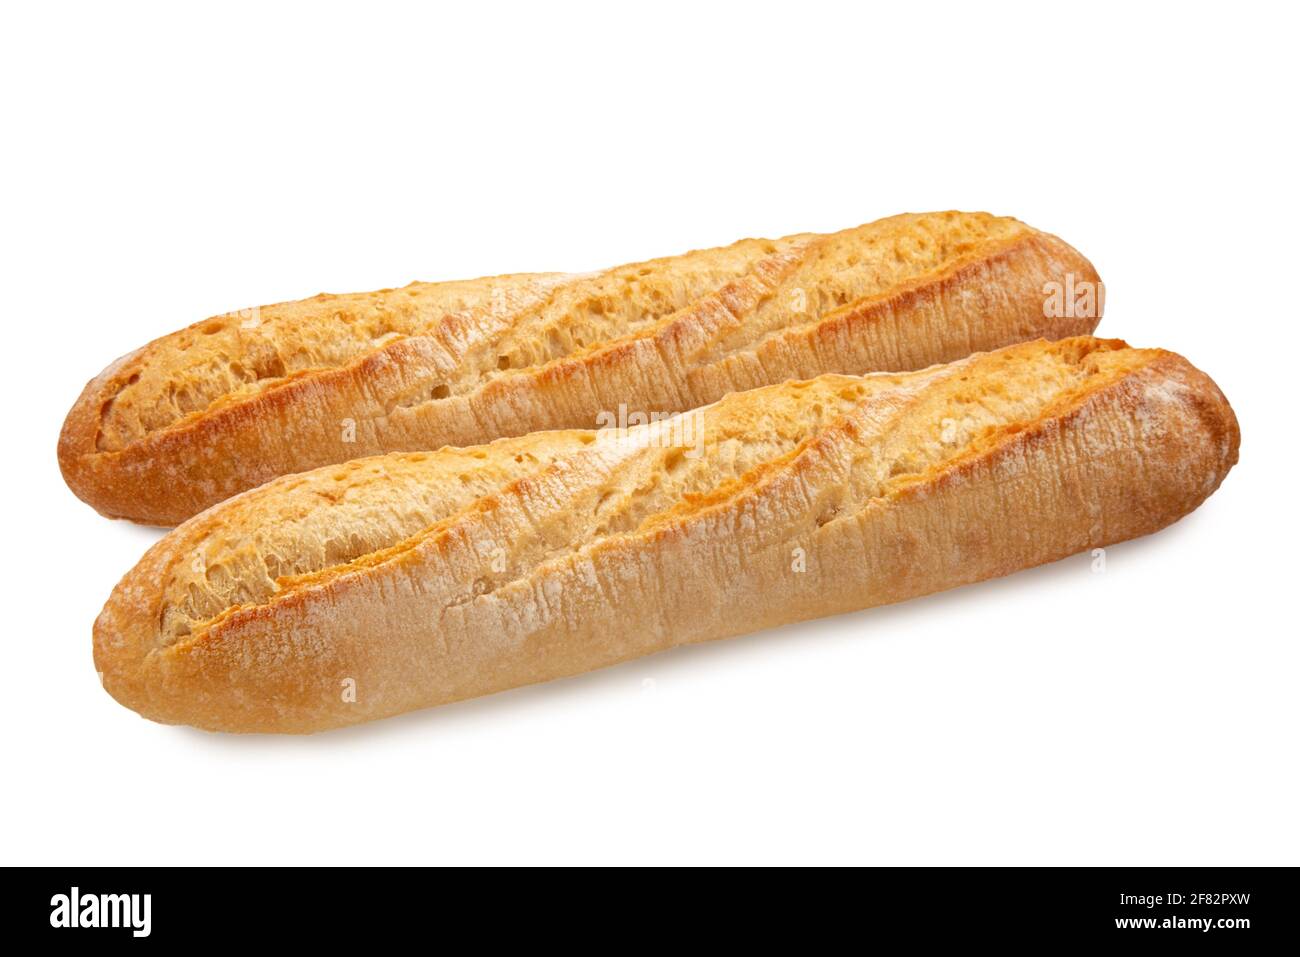 Zwei frische, knusprige französische Baguette-Brote, isoliert auf Weiß Stockfoto